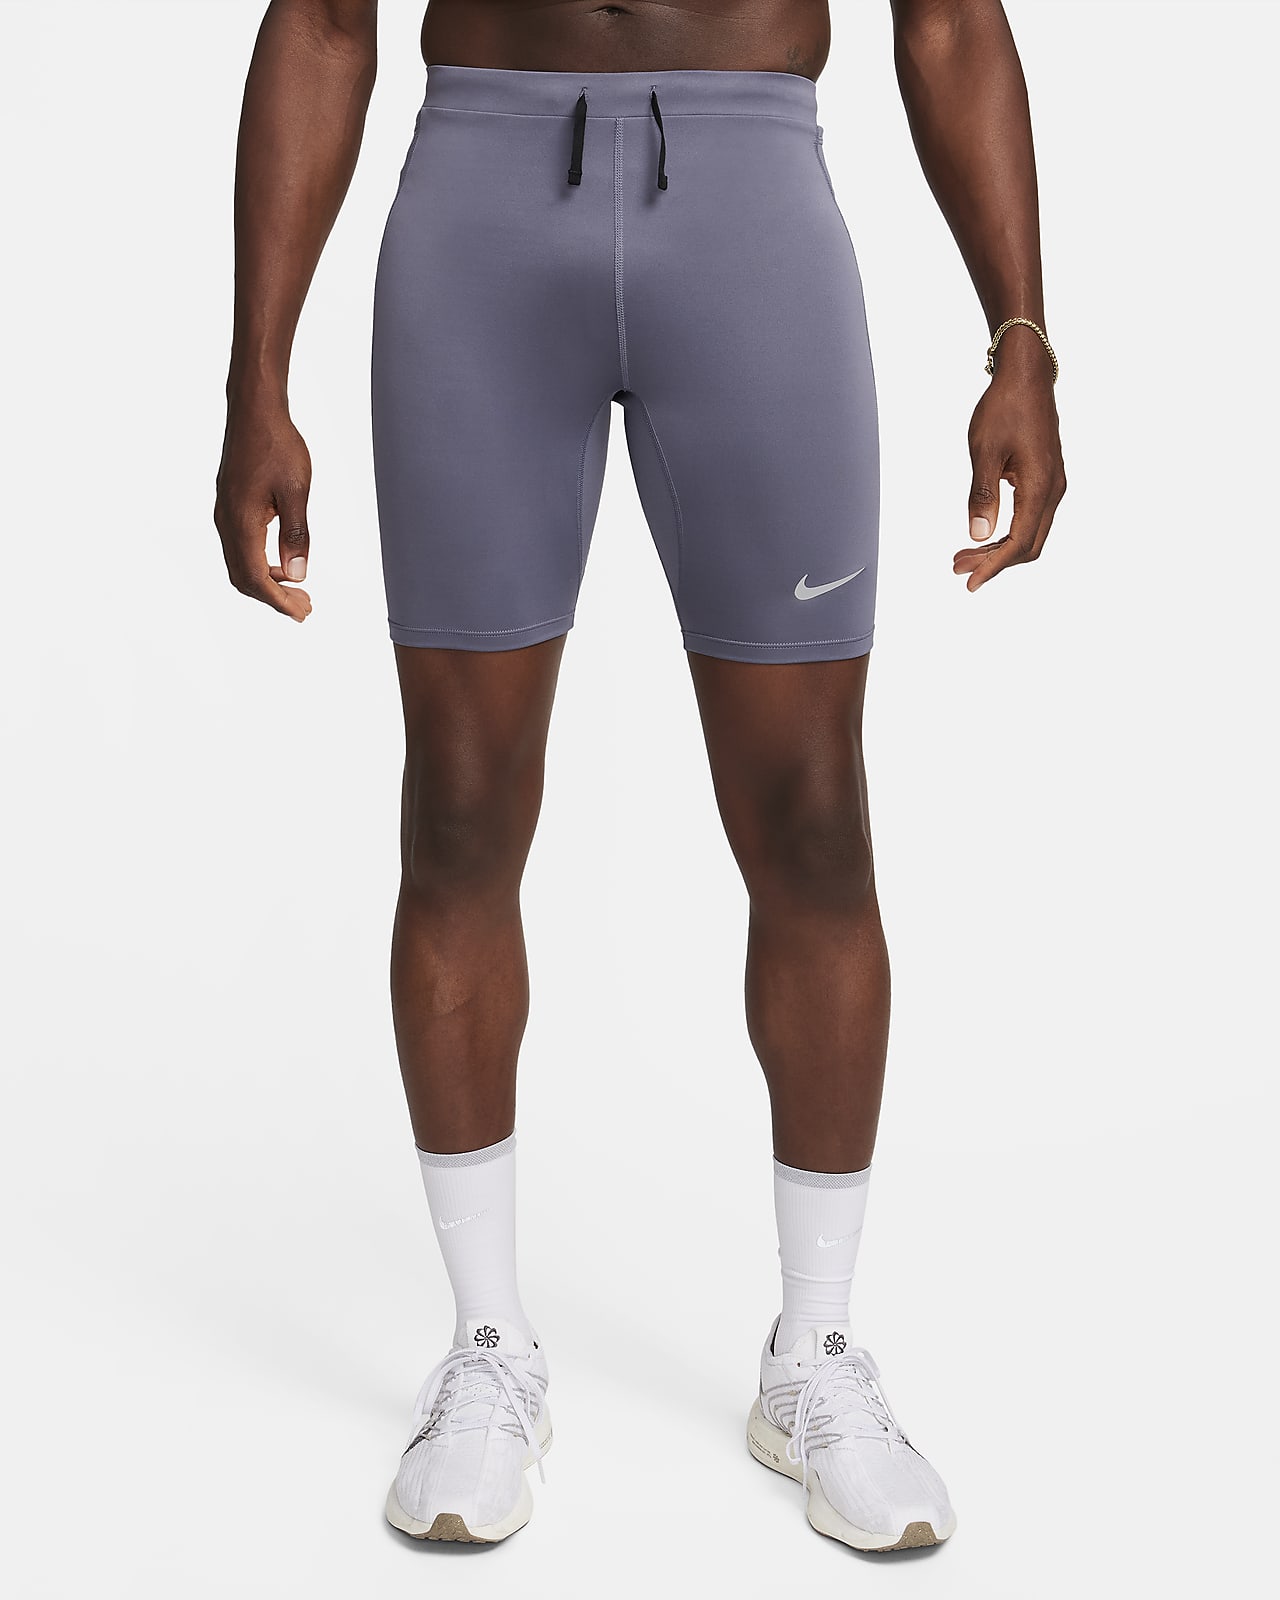 Nike Dri-FIT Pro Men's Tennis Short Tights - Black/White